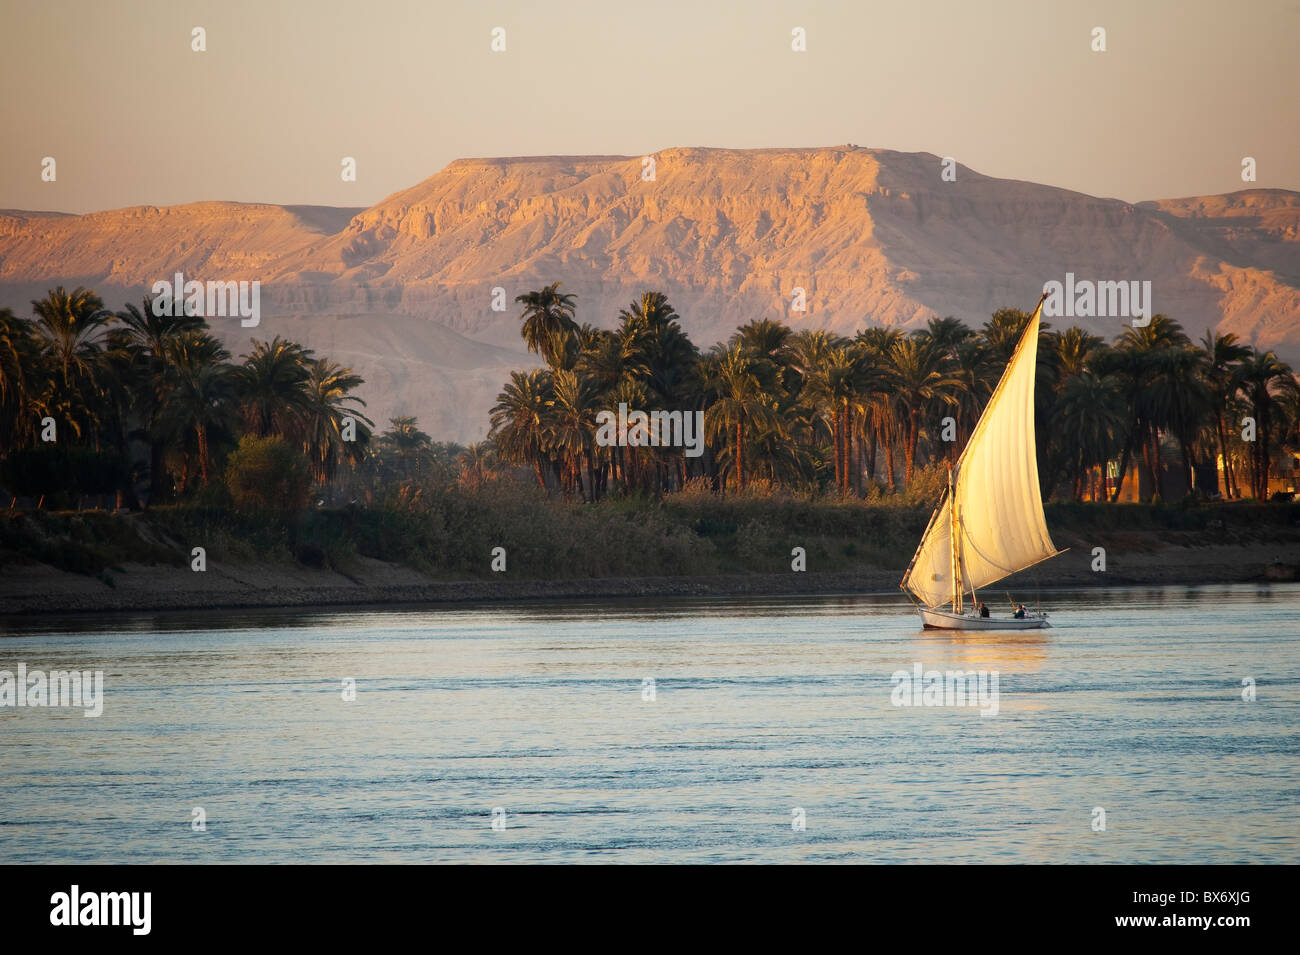 Un incredibile e una bella immagine di un tradizionale Egiziana sail boat chiamato una feluca sul Nilo al tramonto con le montagne alle spalle Foto Stock